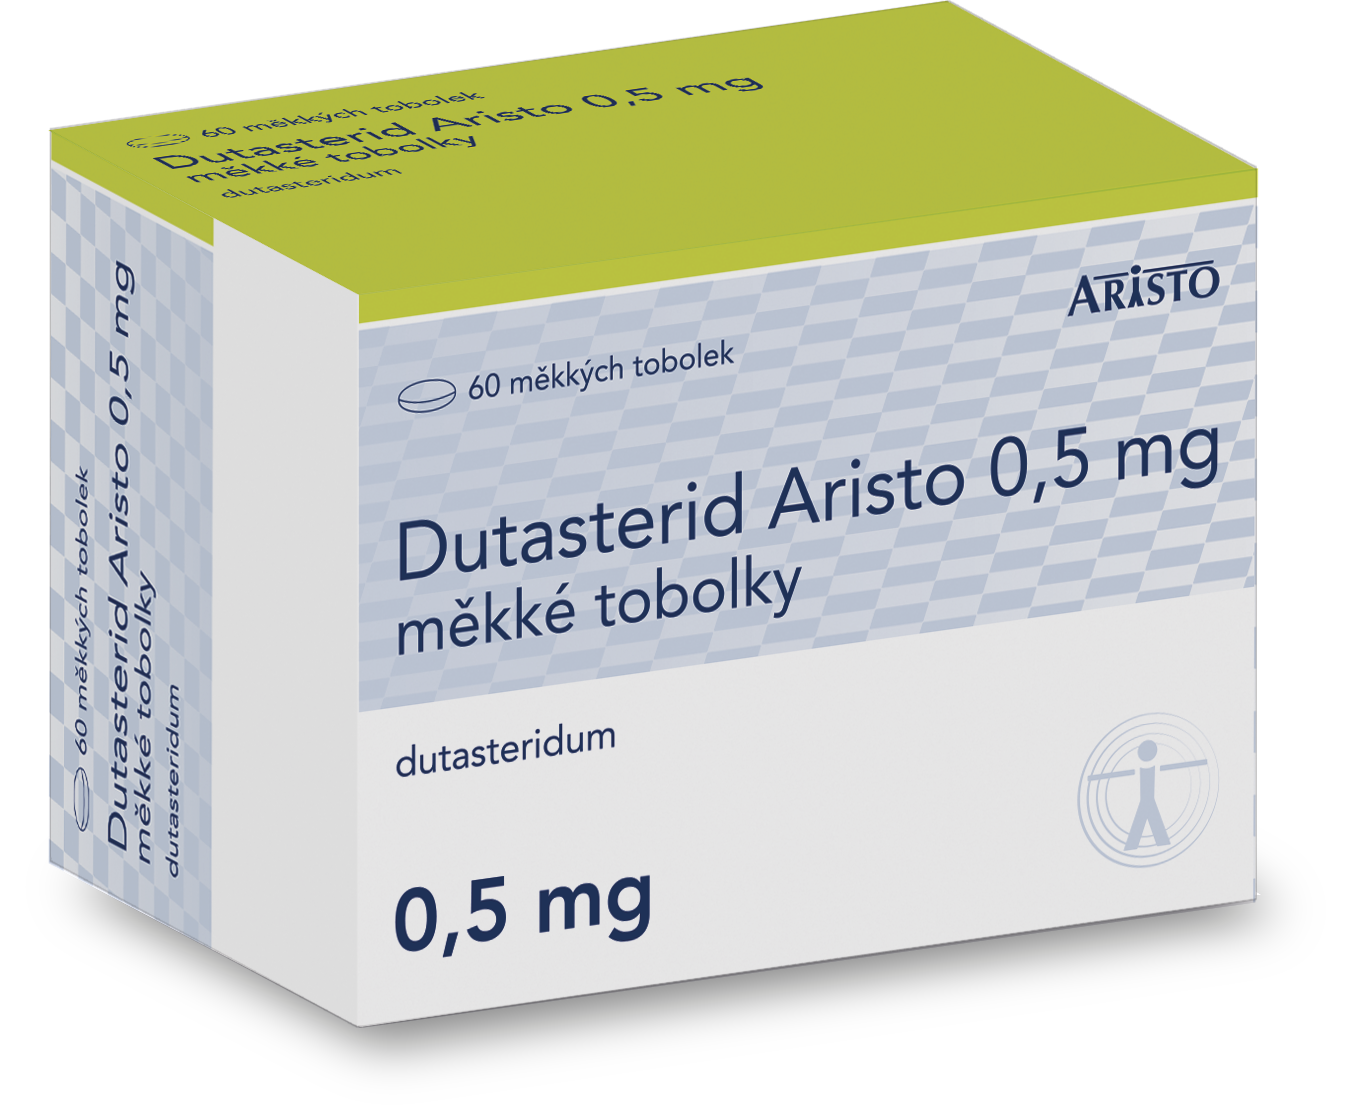 Dutasterid Aristo 0,5 mg